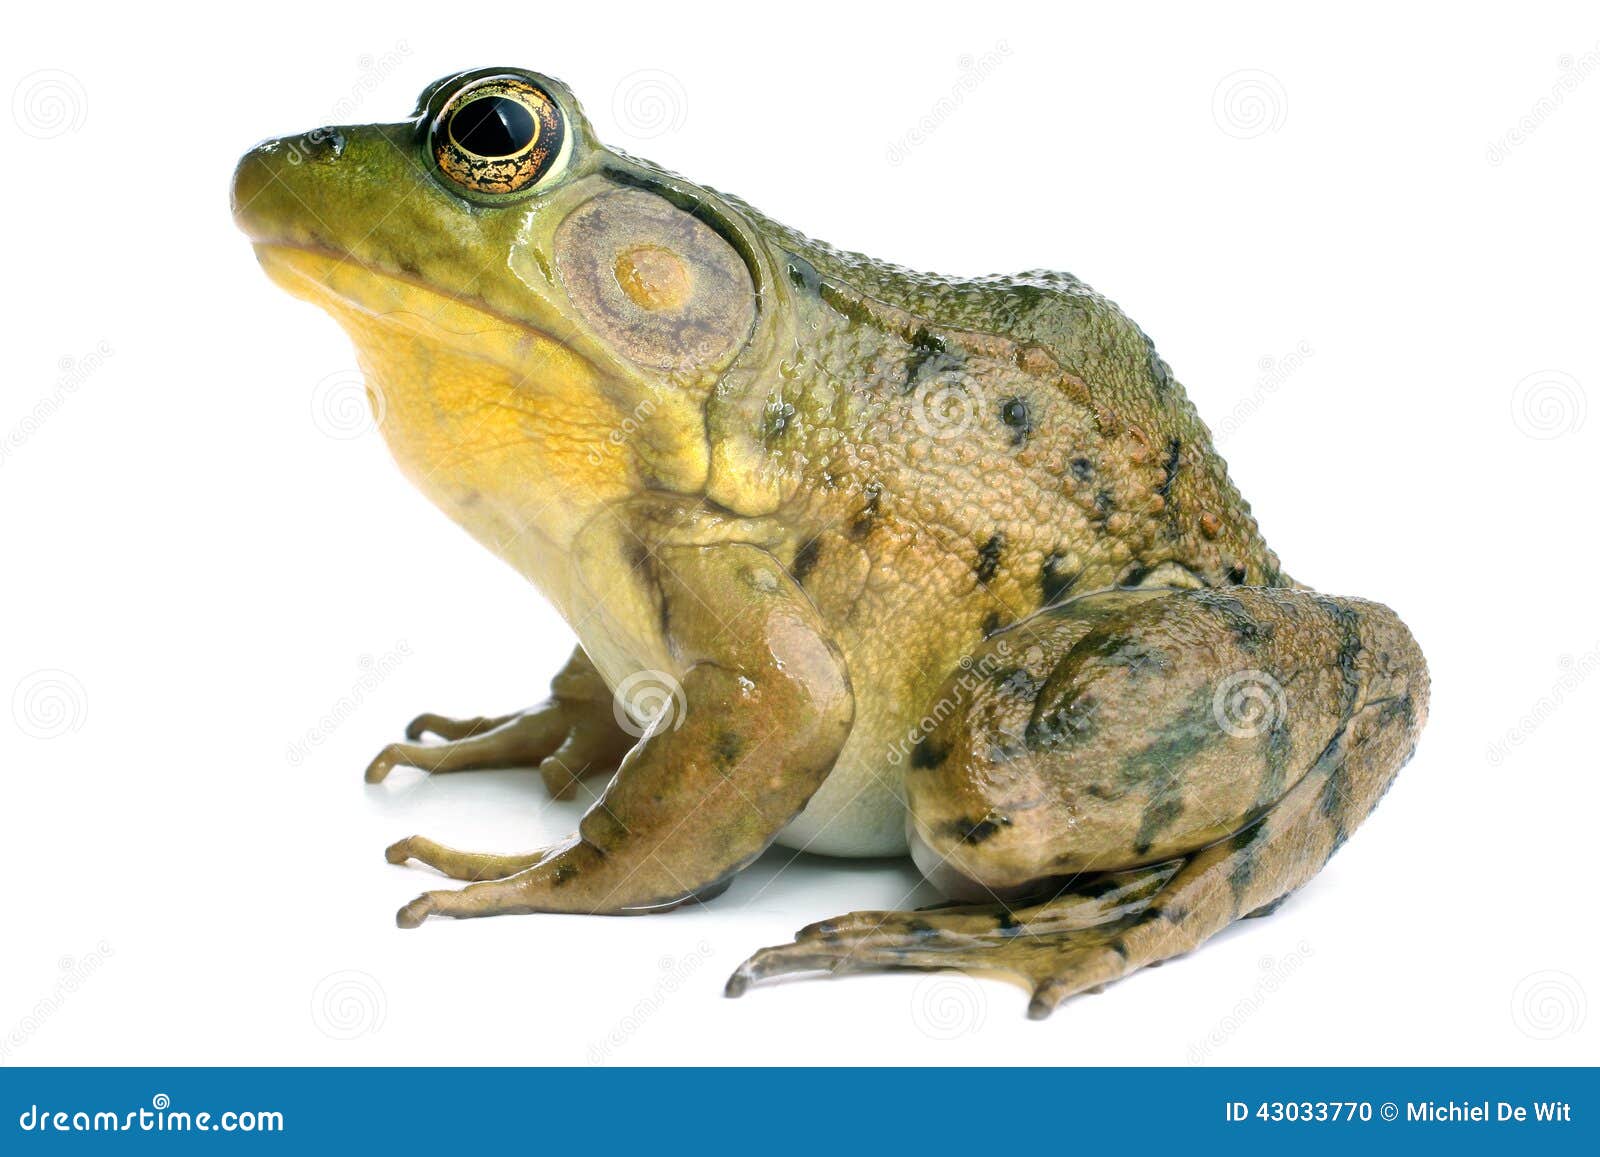 green frog (rana clamitans)